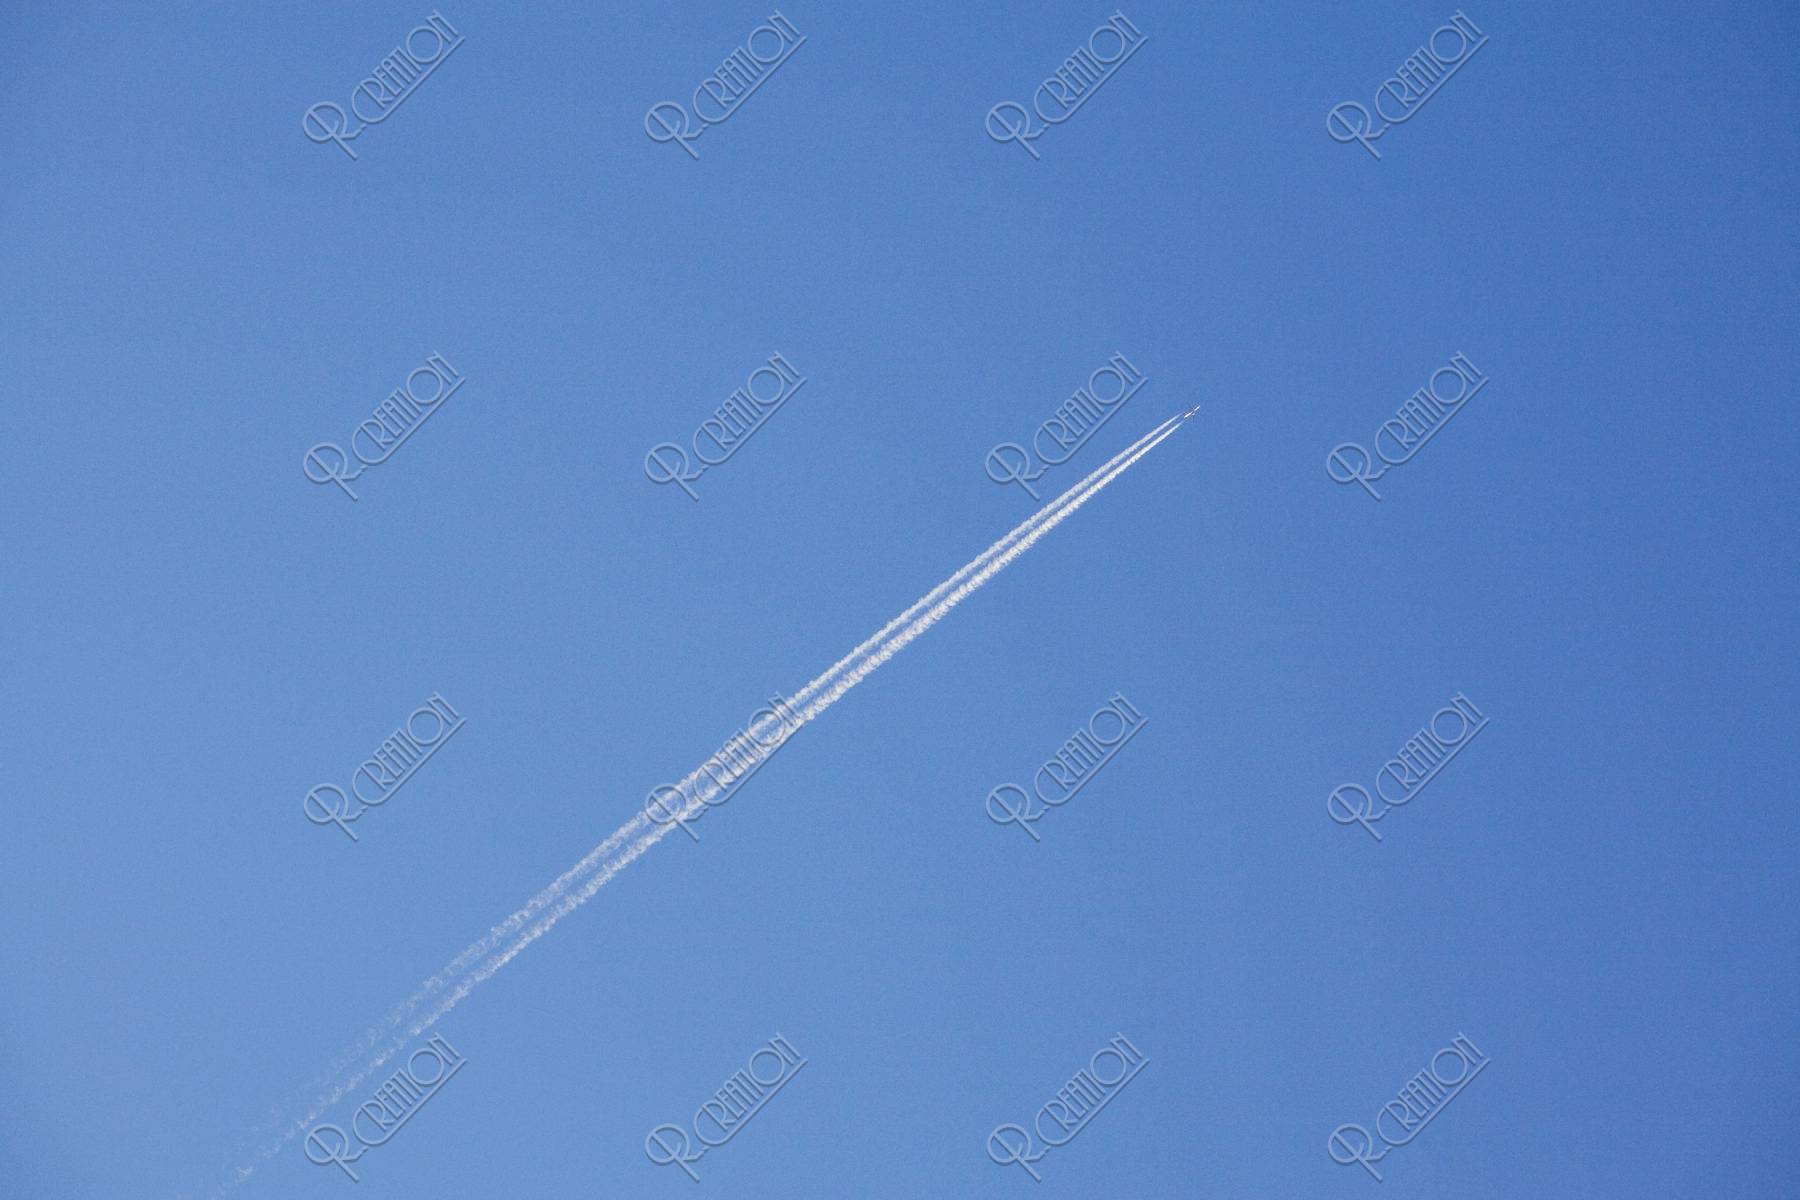 ジェット機と飛行機雲